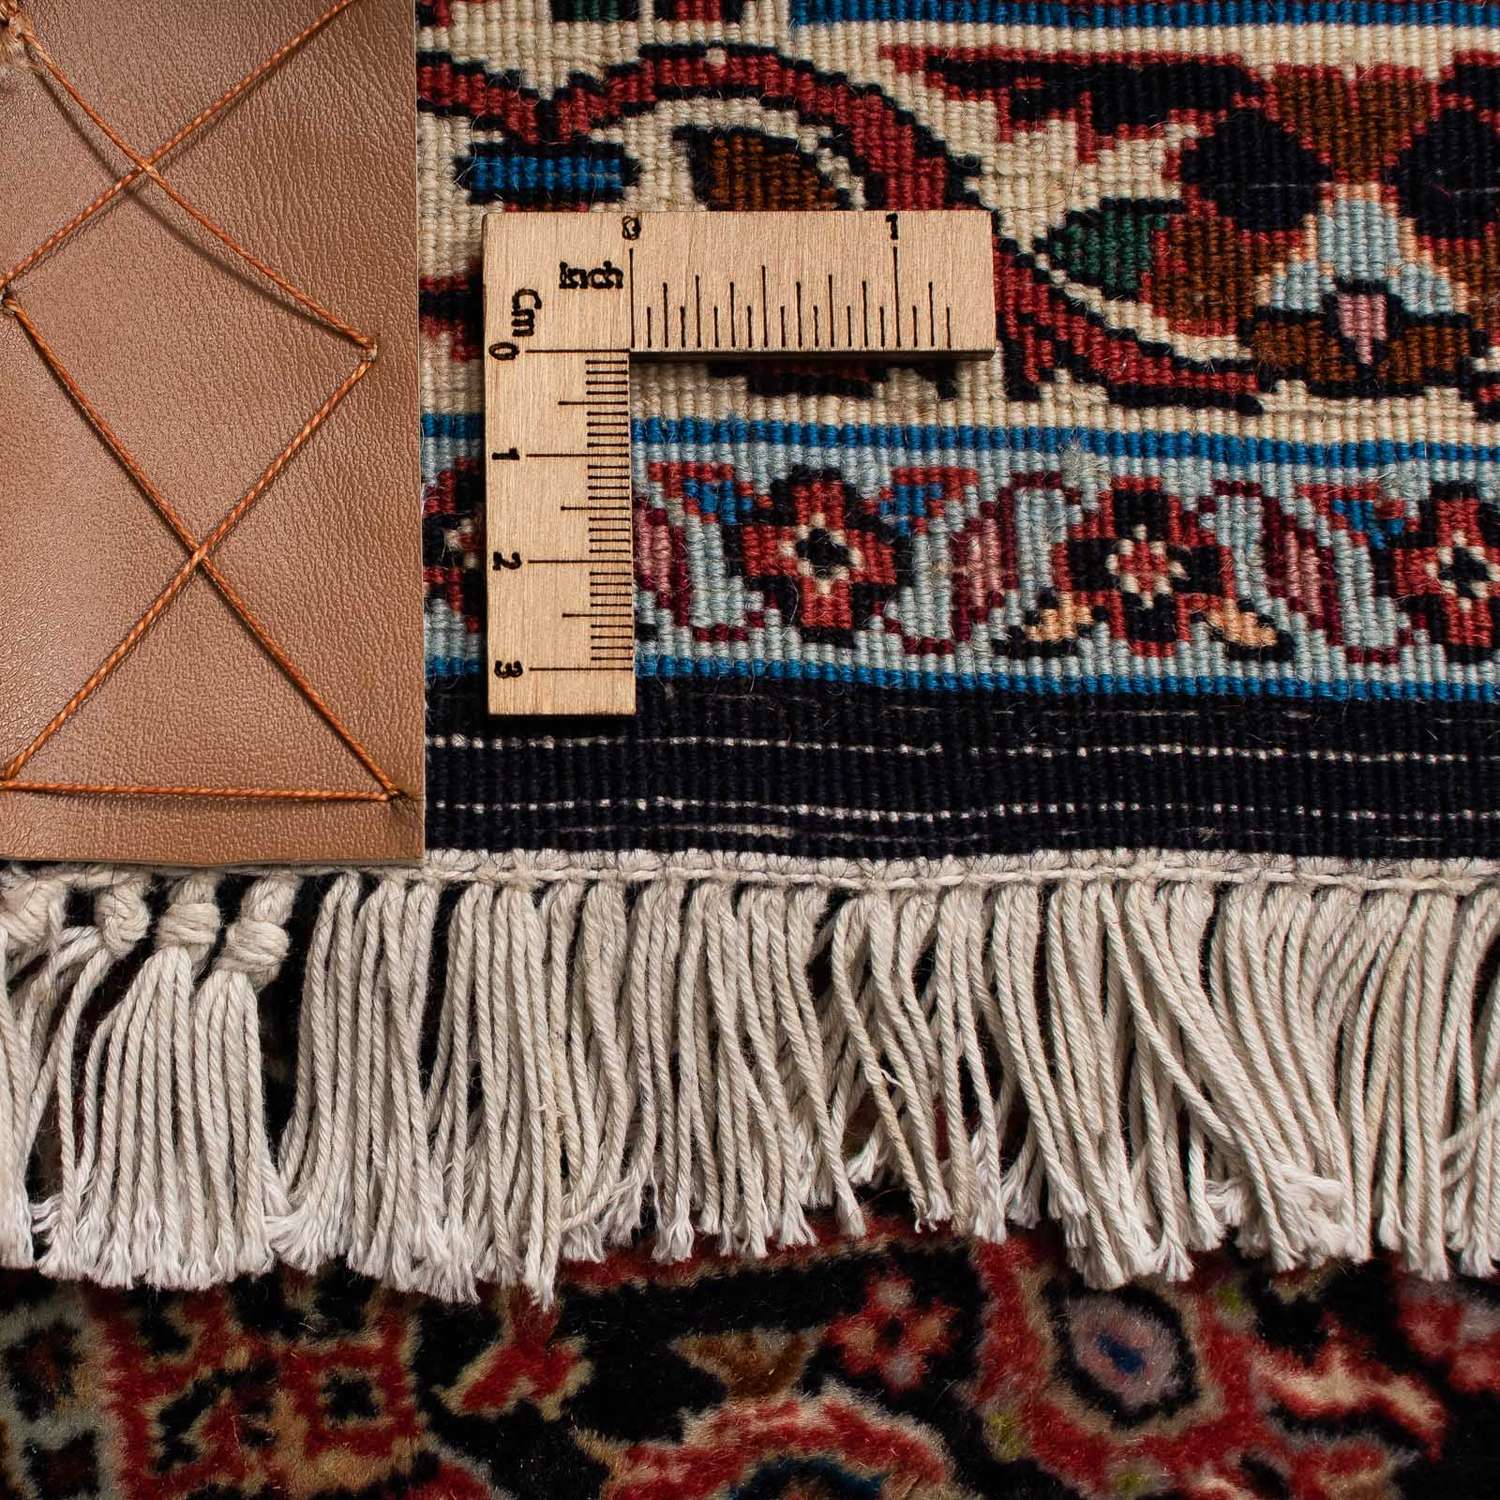 Perzisch tapijt - Bijar - 272 x 198 cm - bruin